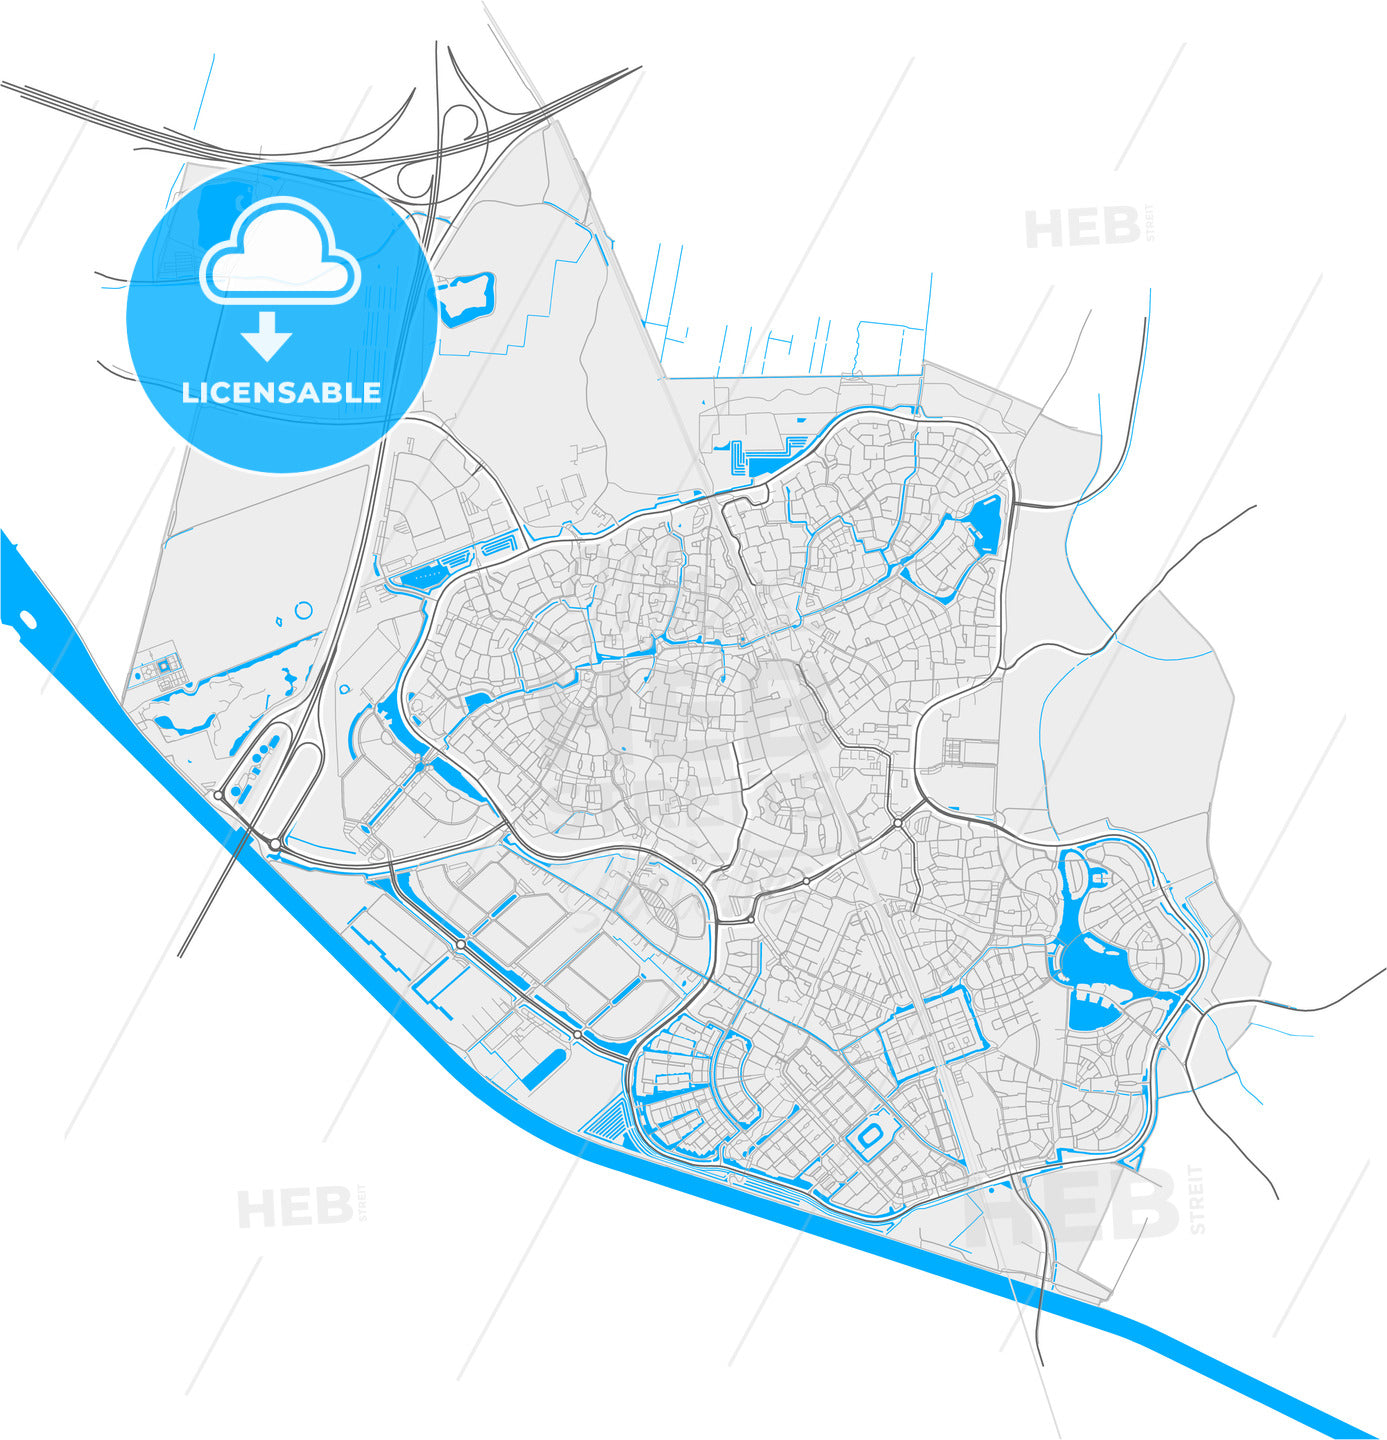 Houten, Utrecht, Netherlands, high quality vector map